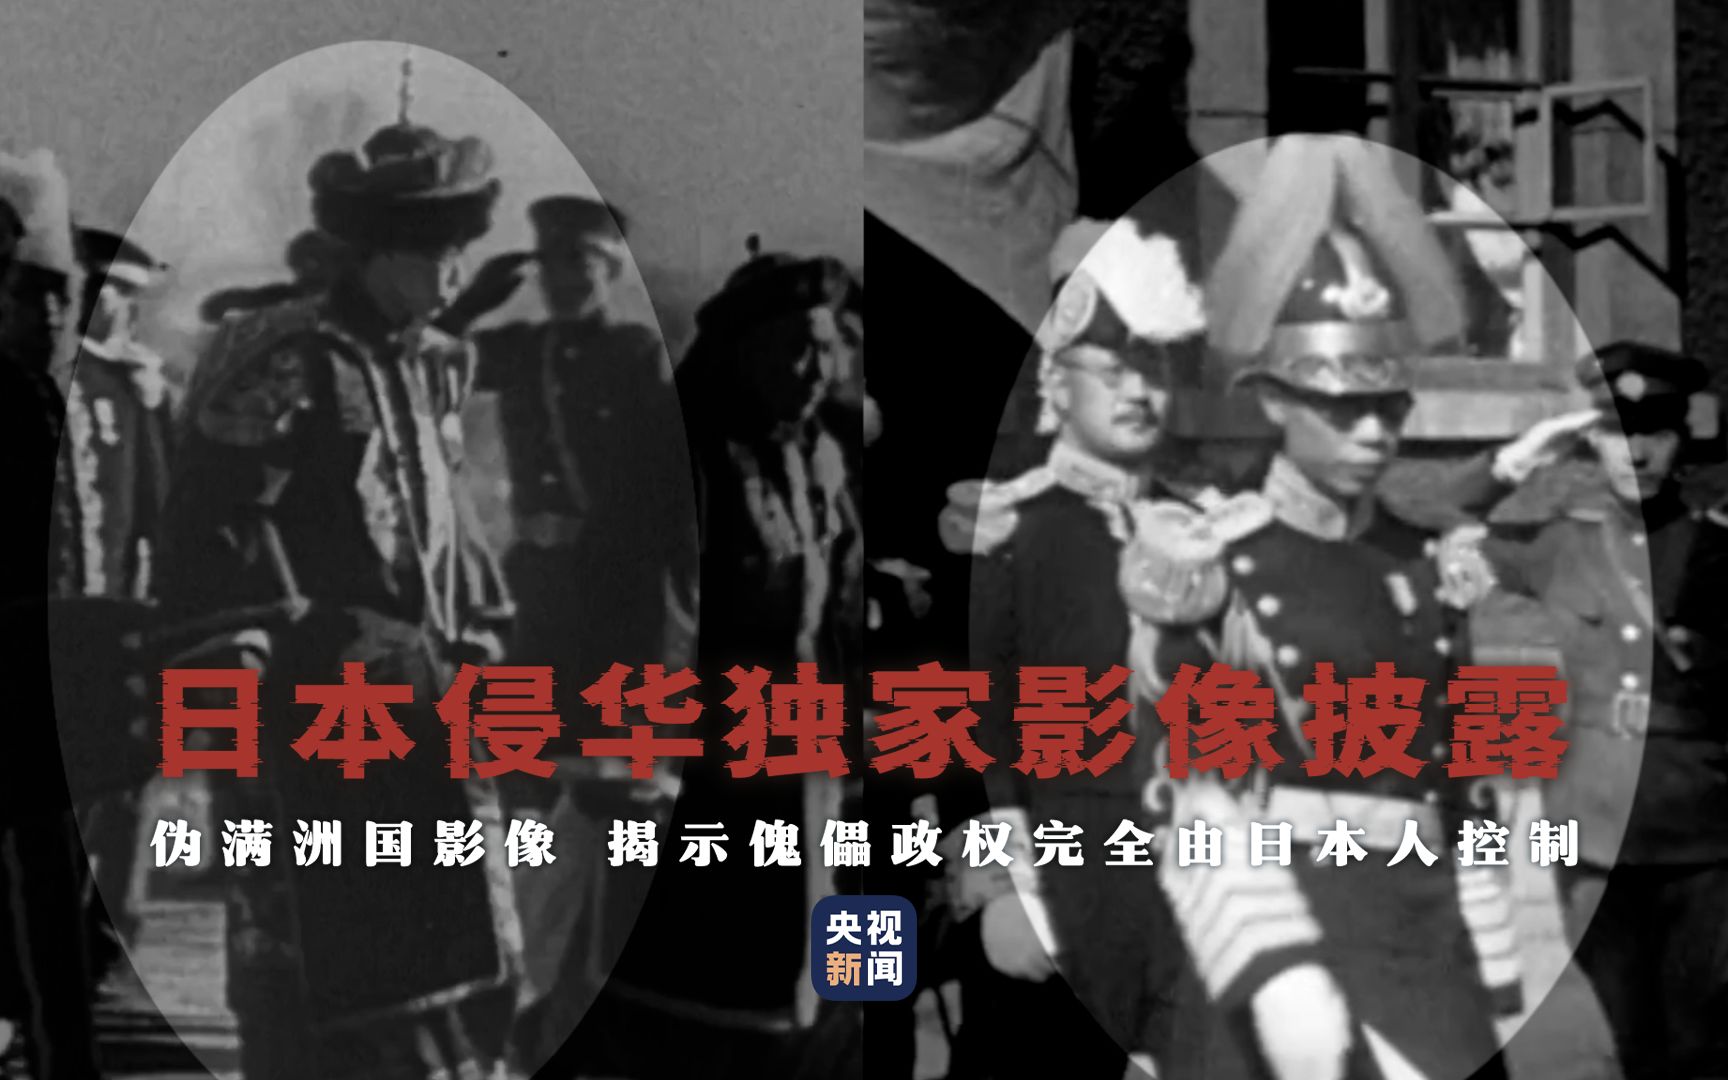 【日本侵华独家影像披露】伪满洲国影像 揭示傀儡政权完全由日本人控制